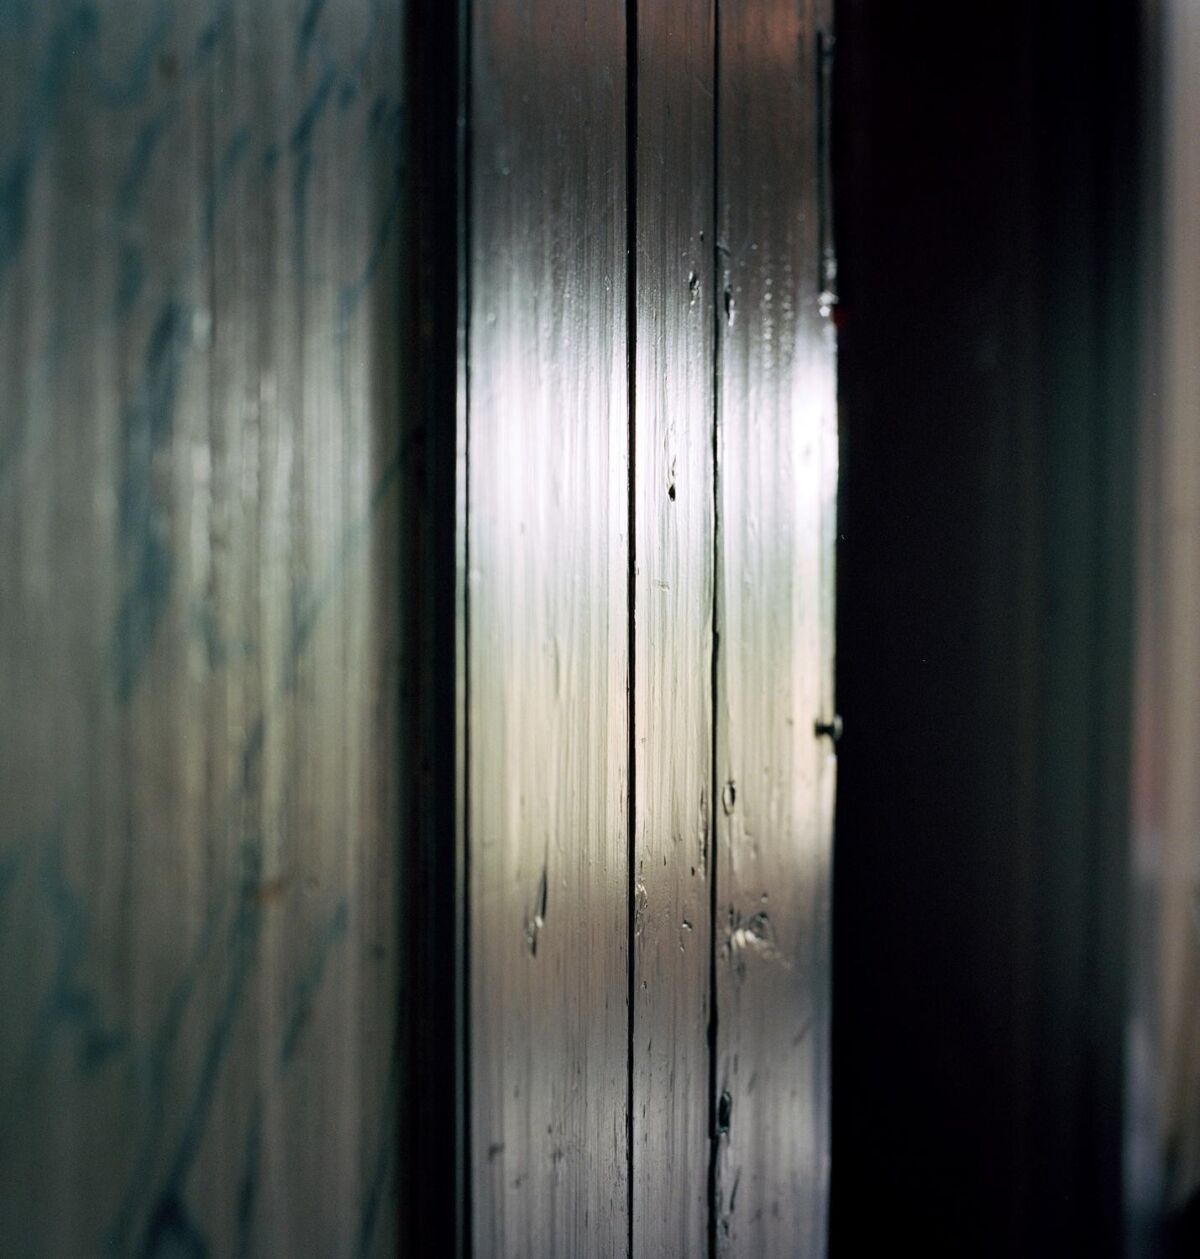 Nærbilde av panel i et mørkt rom med en stripe av lys som gir gjenskinn i trevirket. Foto.